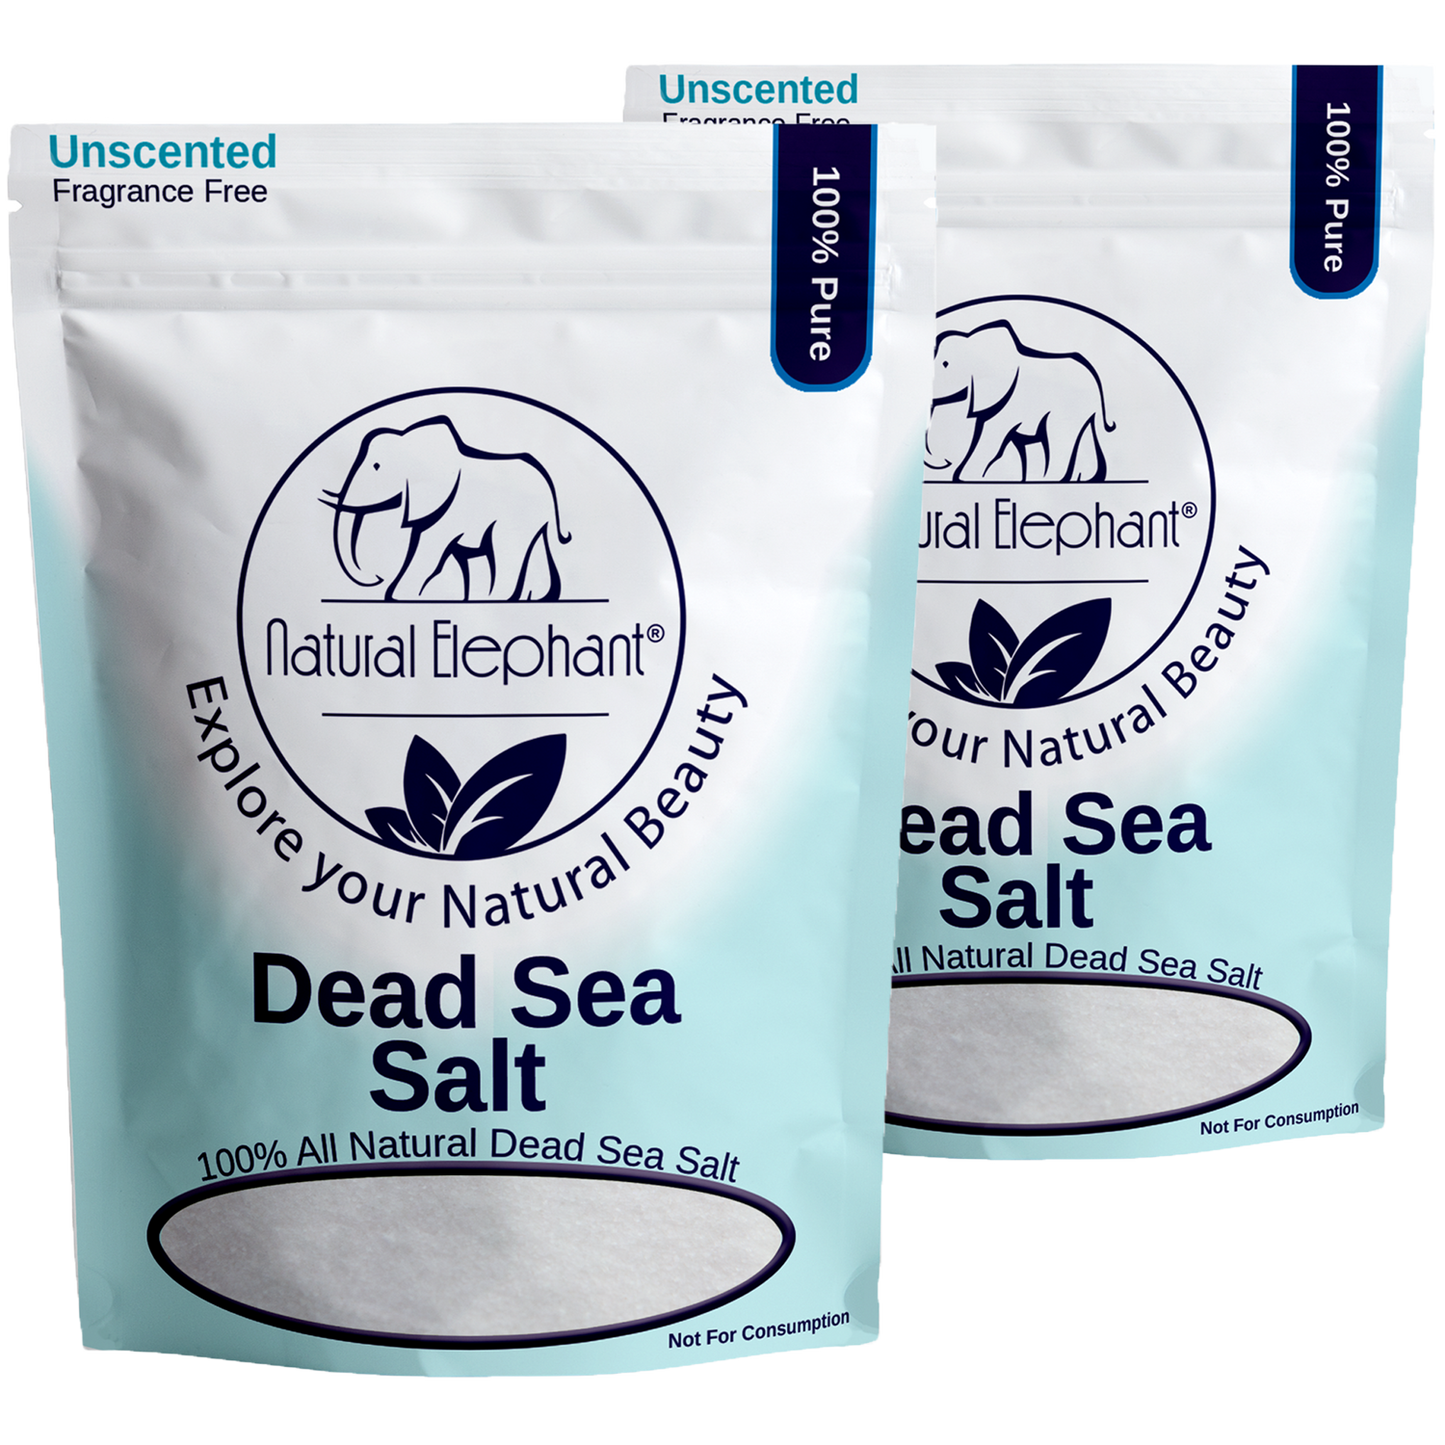 Fine Dead Sea Salt